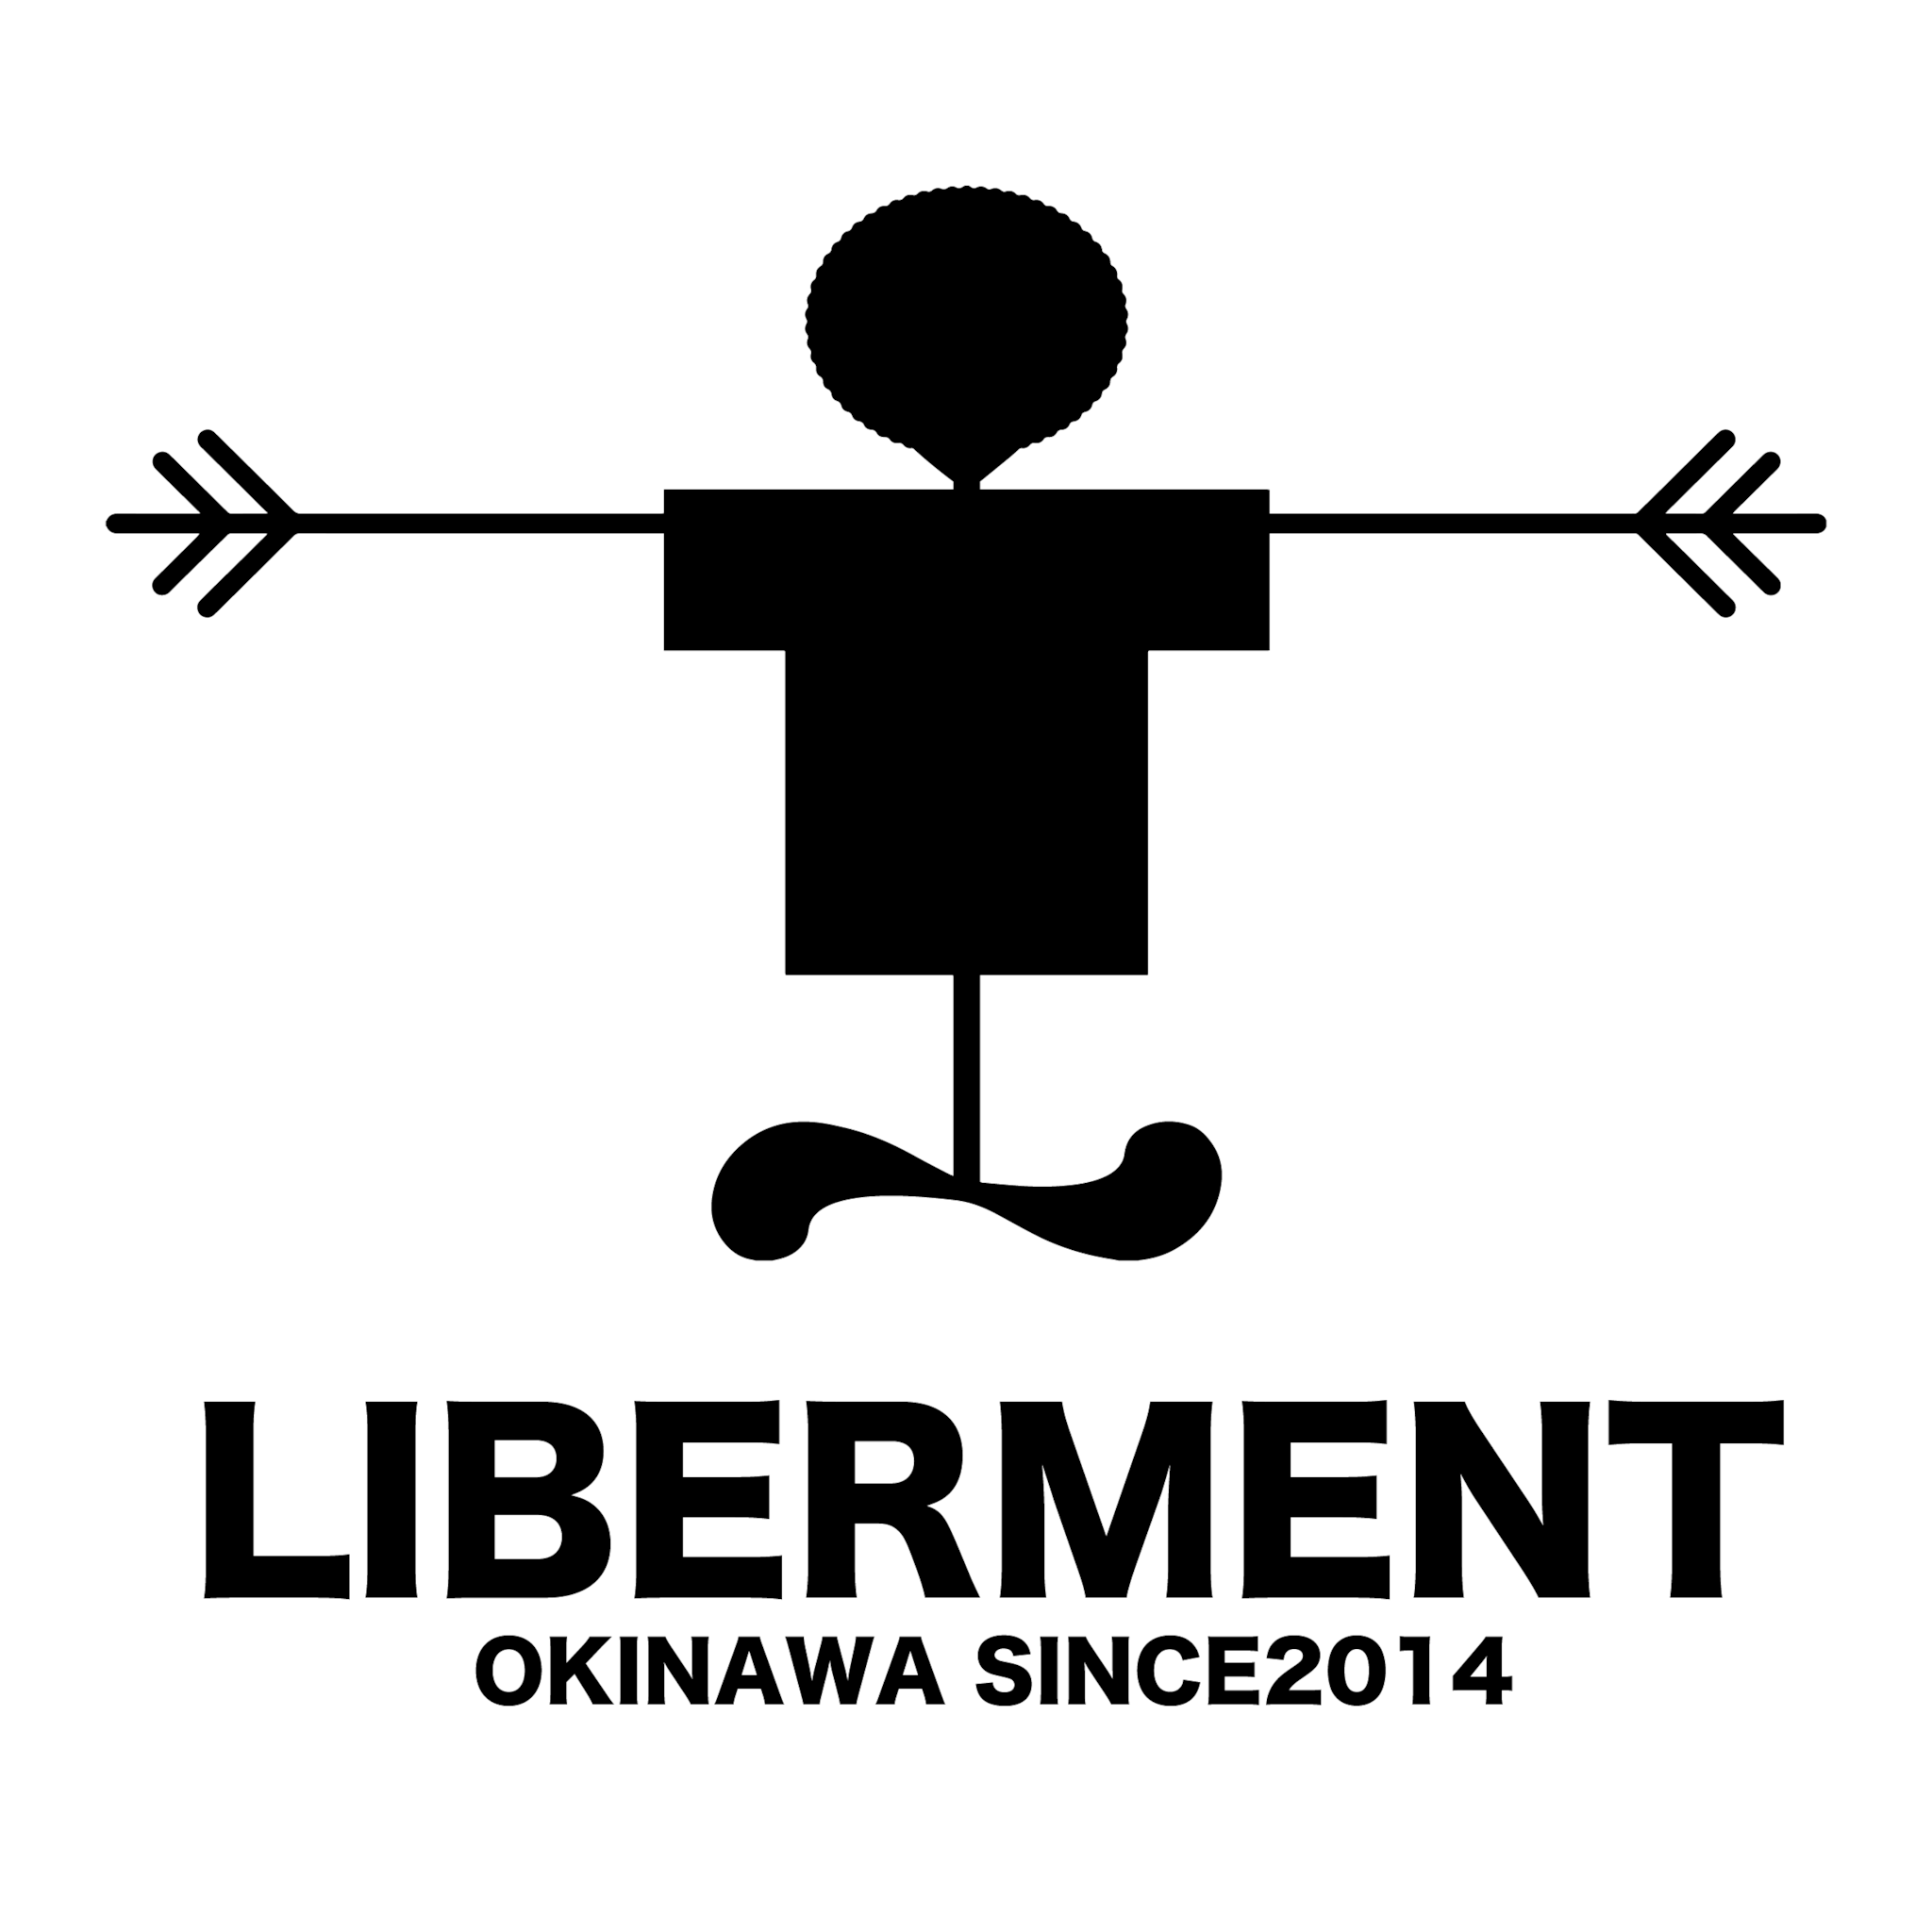 LIBERMENT OKINAWA